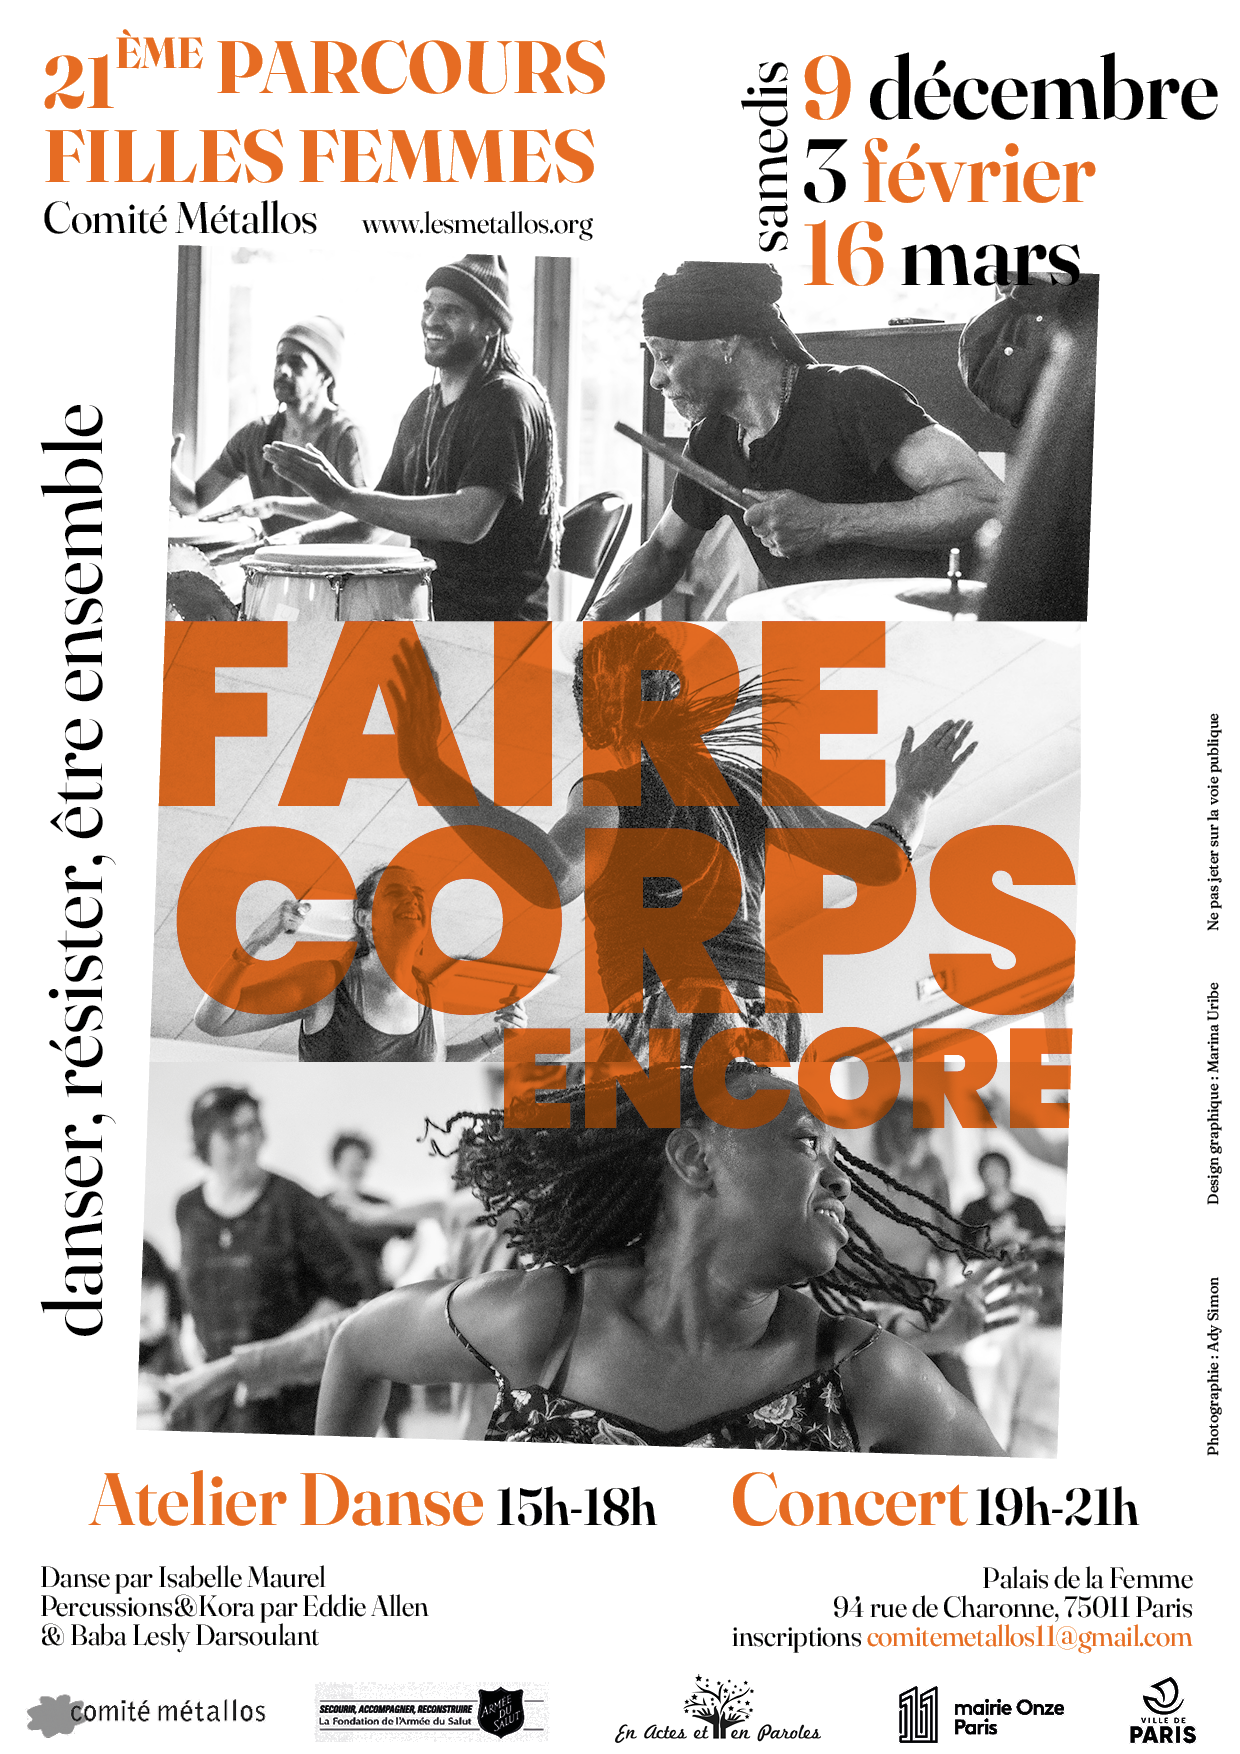 Affiche 21e Parcours Filles Femmes
Faire Corps, encore !
Les samedis 9 décembre, 3 février et 16 mars